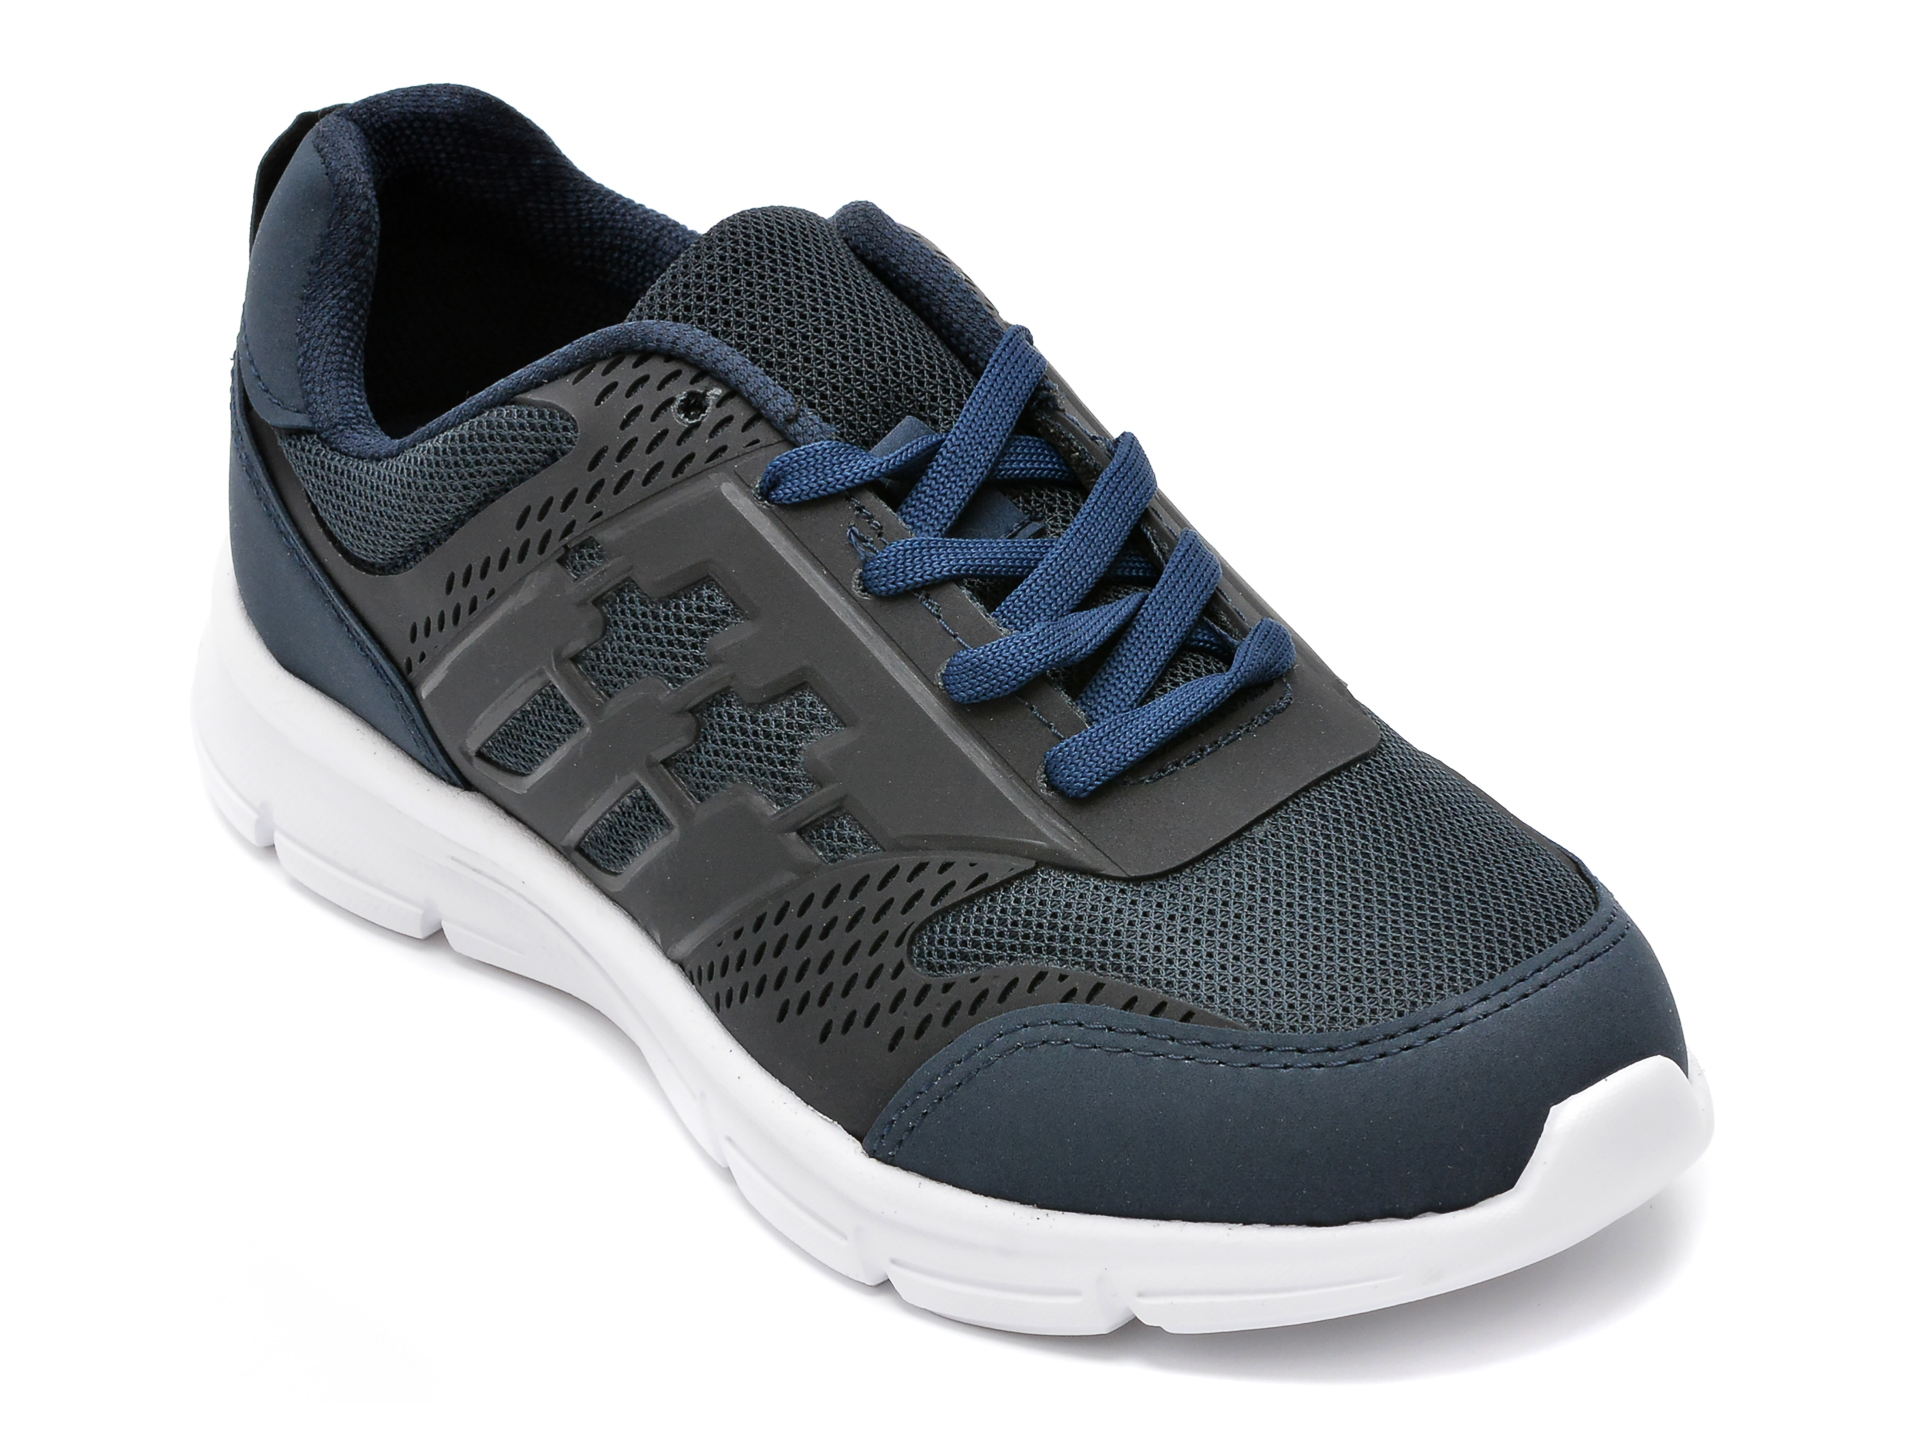 Pantofi sport POLARIS bleumarin, 515223, din material textil /barbati/pantofi